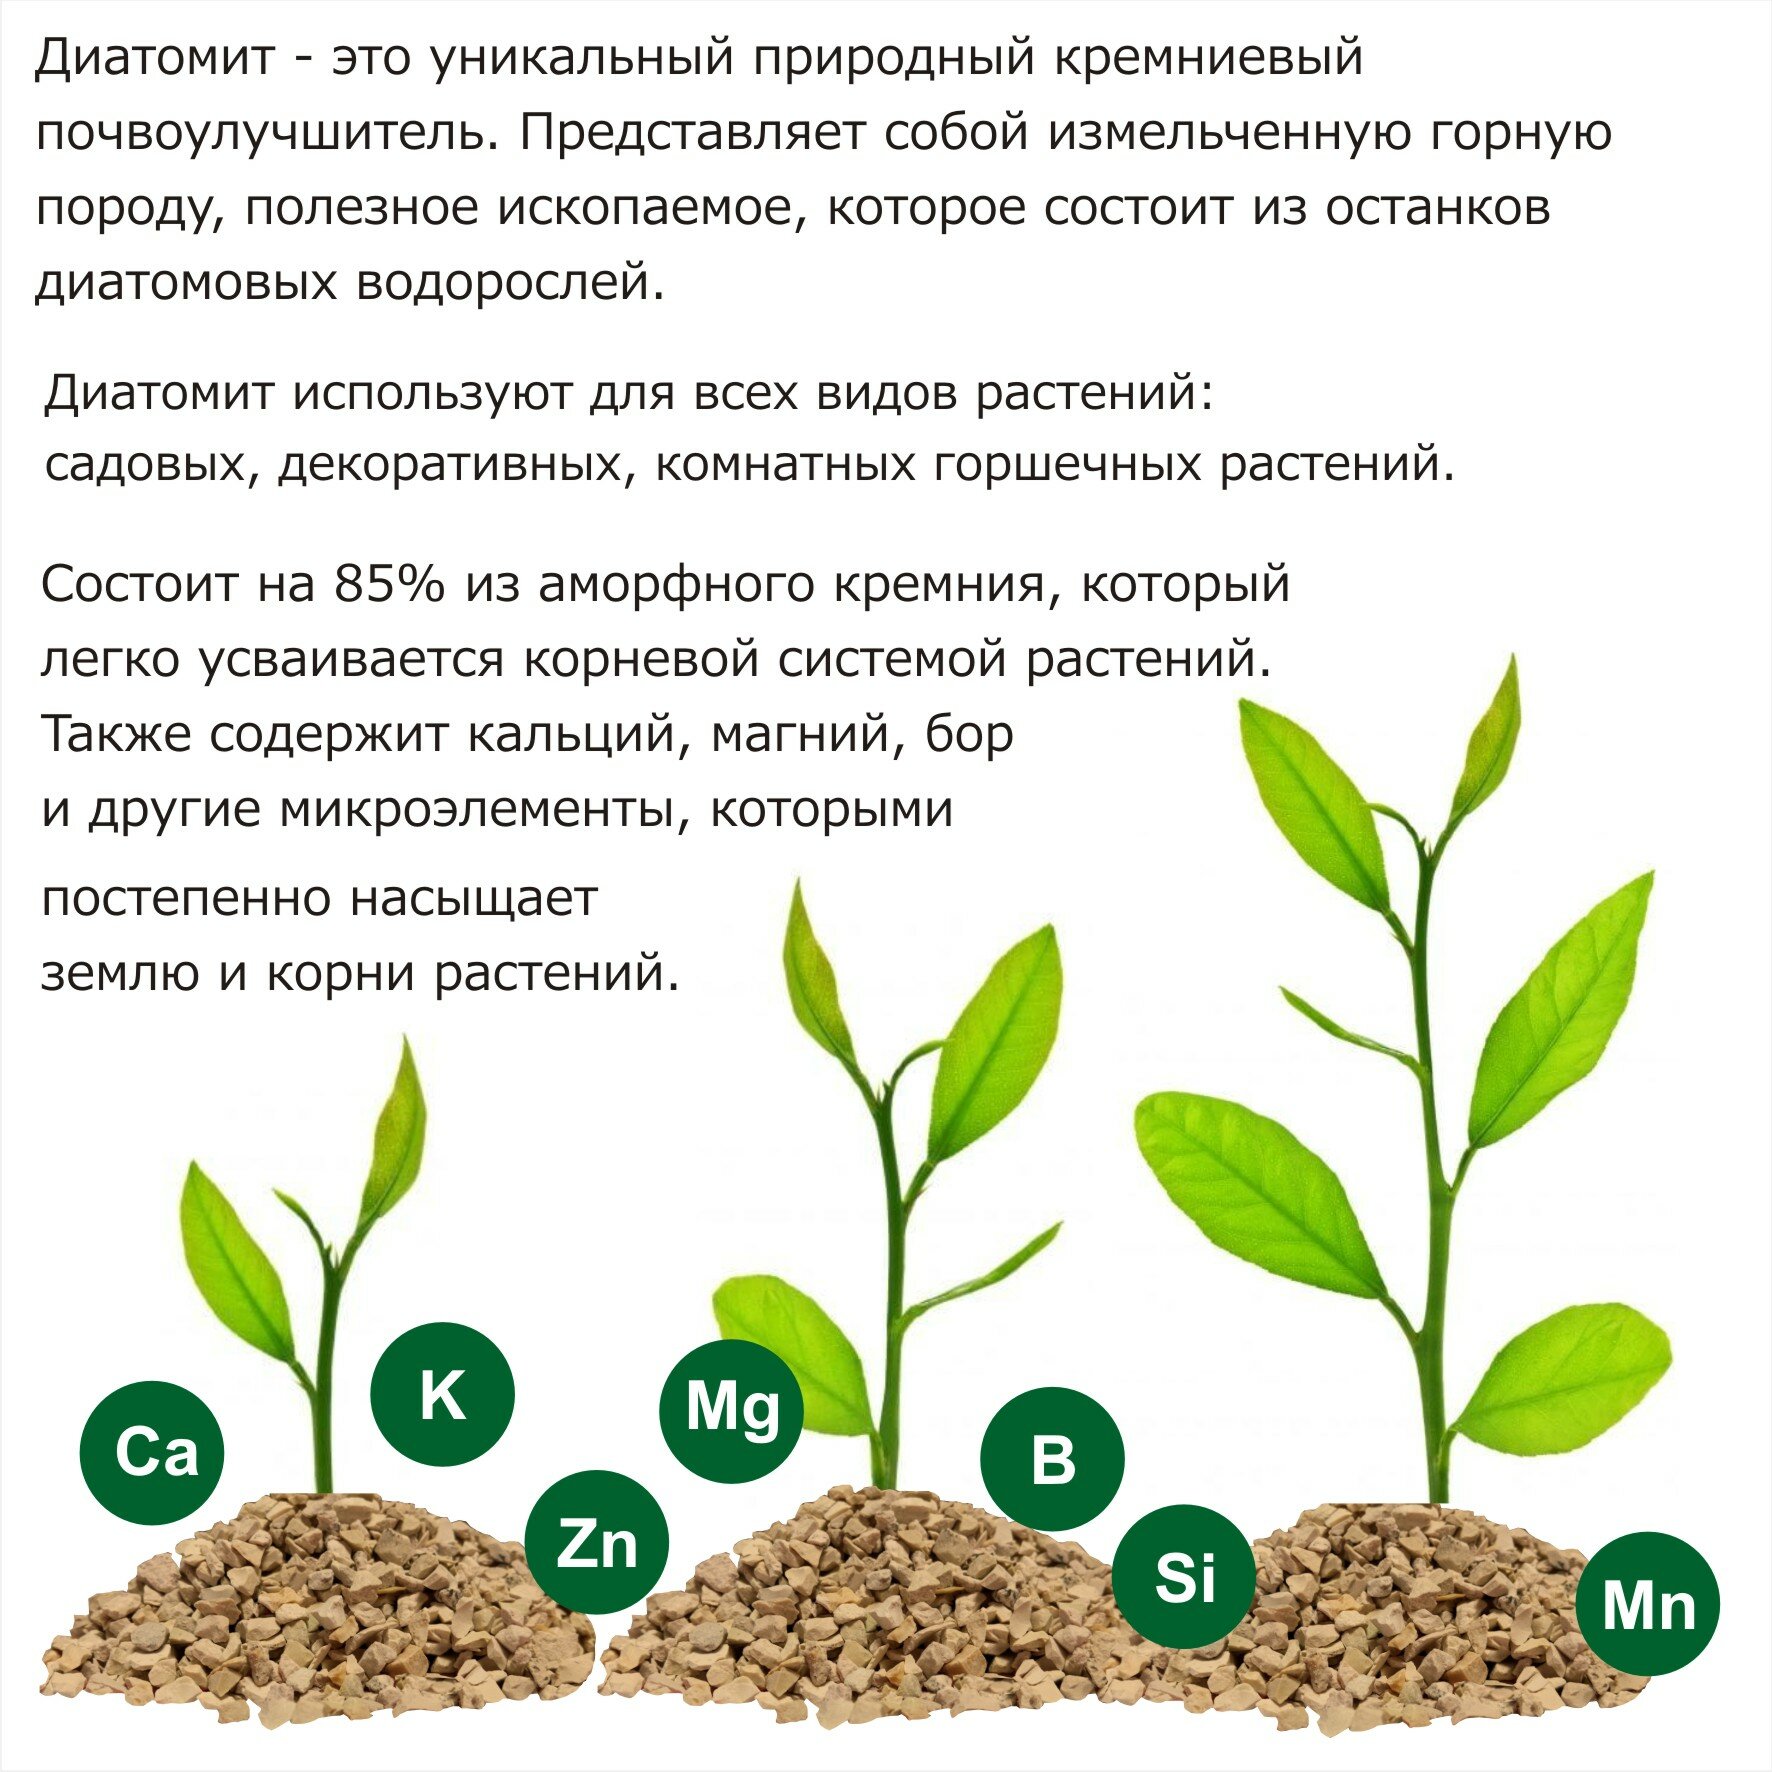 Диатомит садовый, фракция 3-5 мм, 1,4 кг - натуральное кремниевое удобрение для растений, почвоулучшитель для сада, огорода, комнатных растений